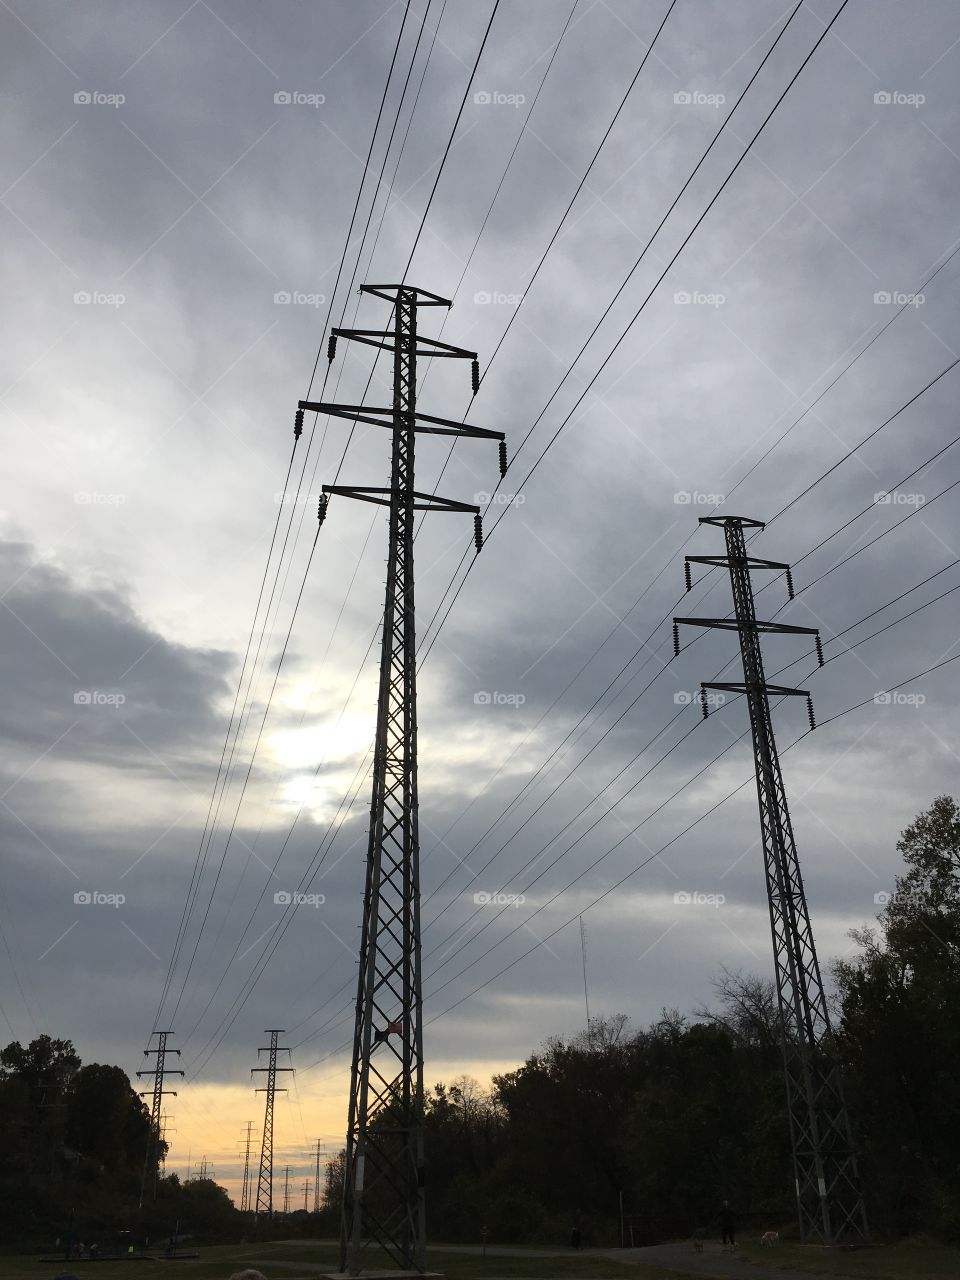 Power line skies